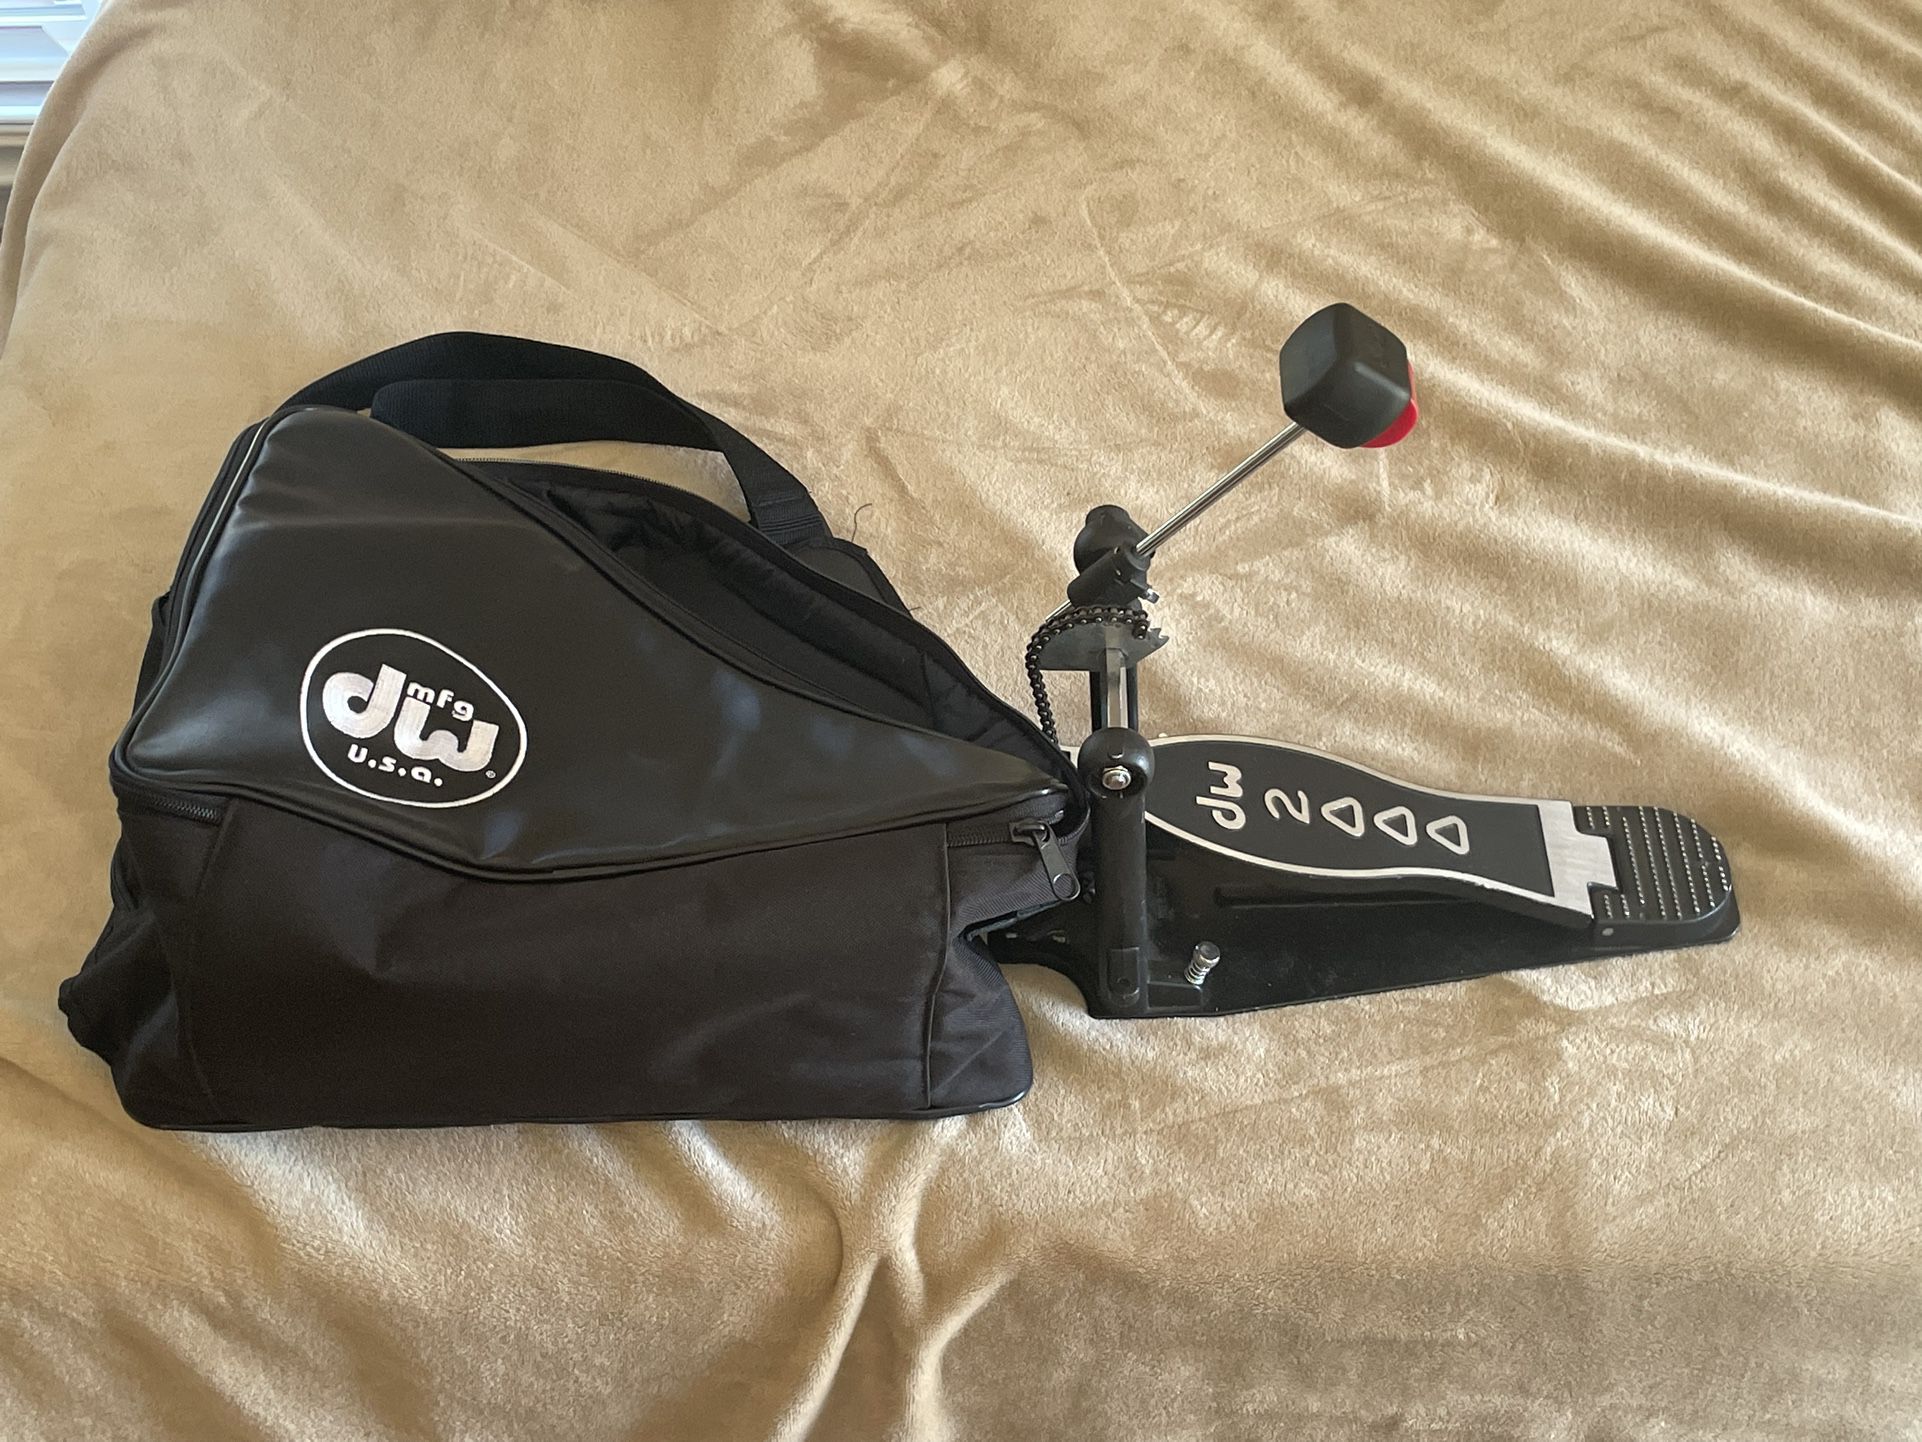 DW 2000 Kick Pedal And DW Pedal Bag